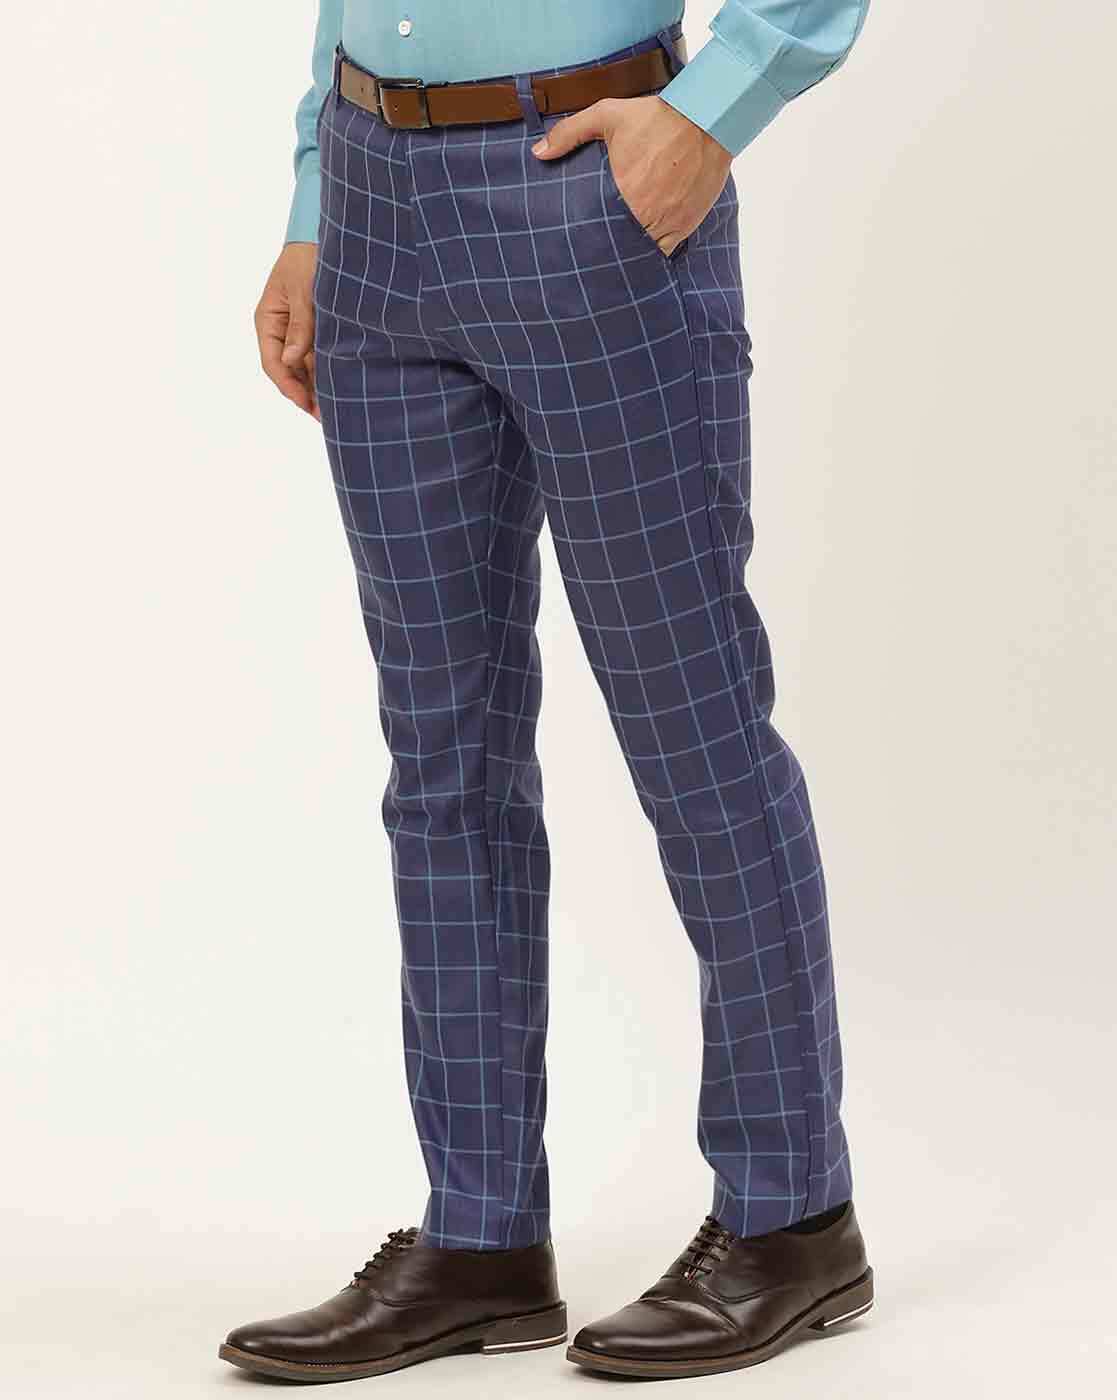 Gray Men Plaid Suit Pants Fashion Business Casual Trousers Large Size 29-35  Pants Men Blue Brown Gray Pant - AliExpress